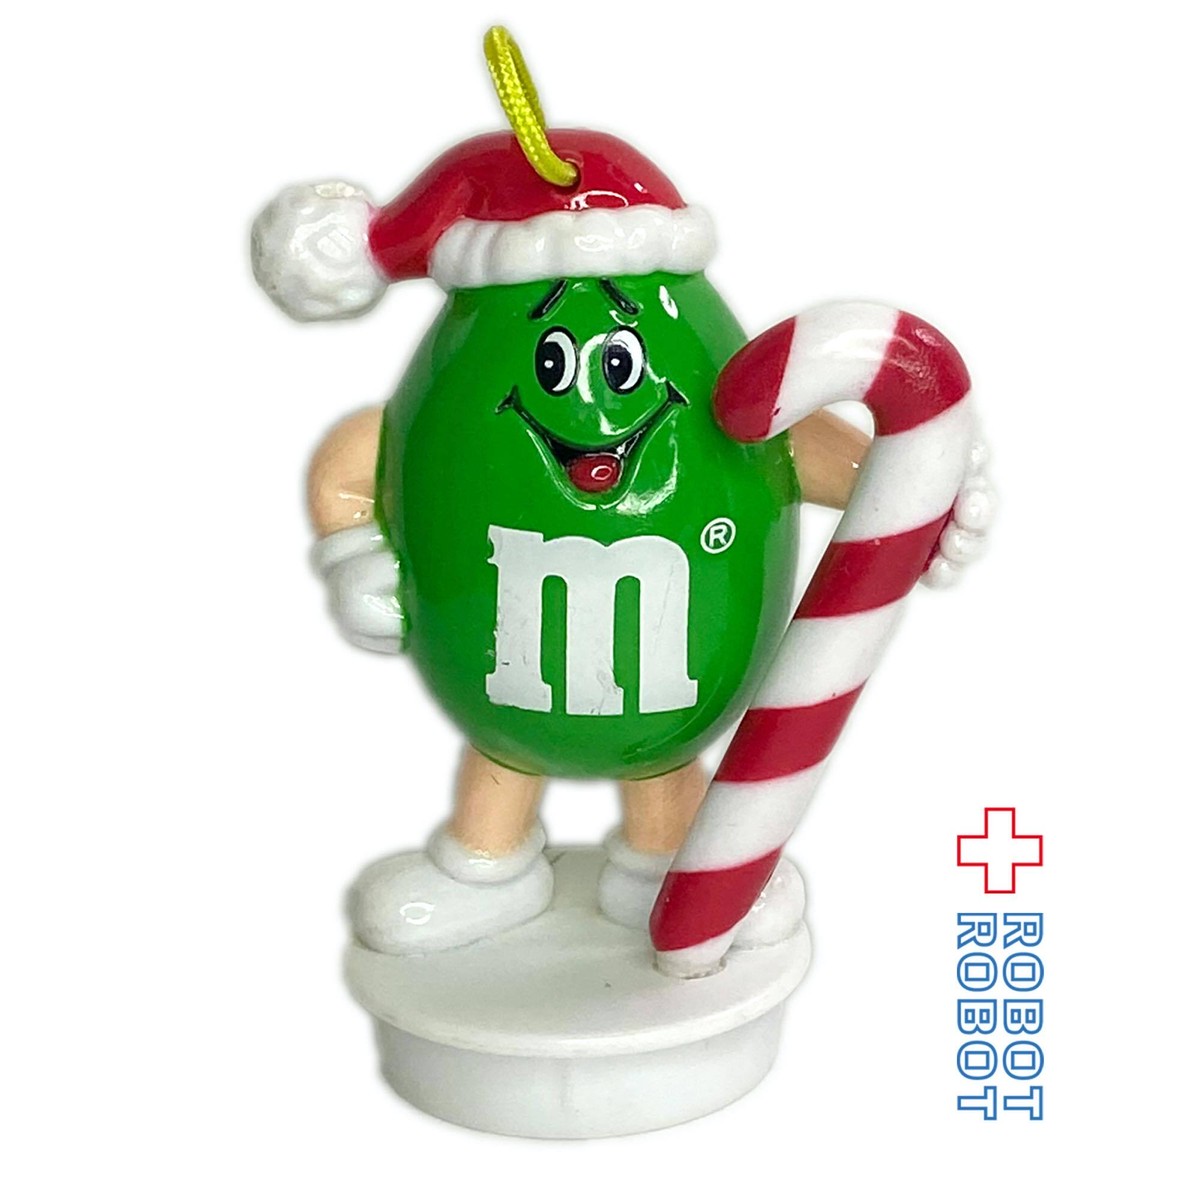 M M S 1992 サンタハットピーナッツグリーン With Candy Cane クリスマスオーナメント Robotrobot